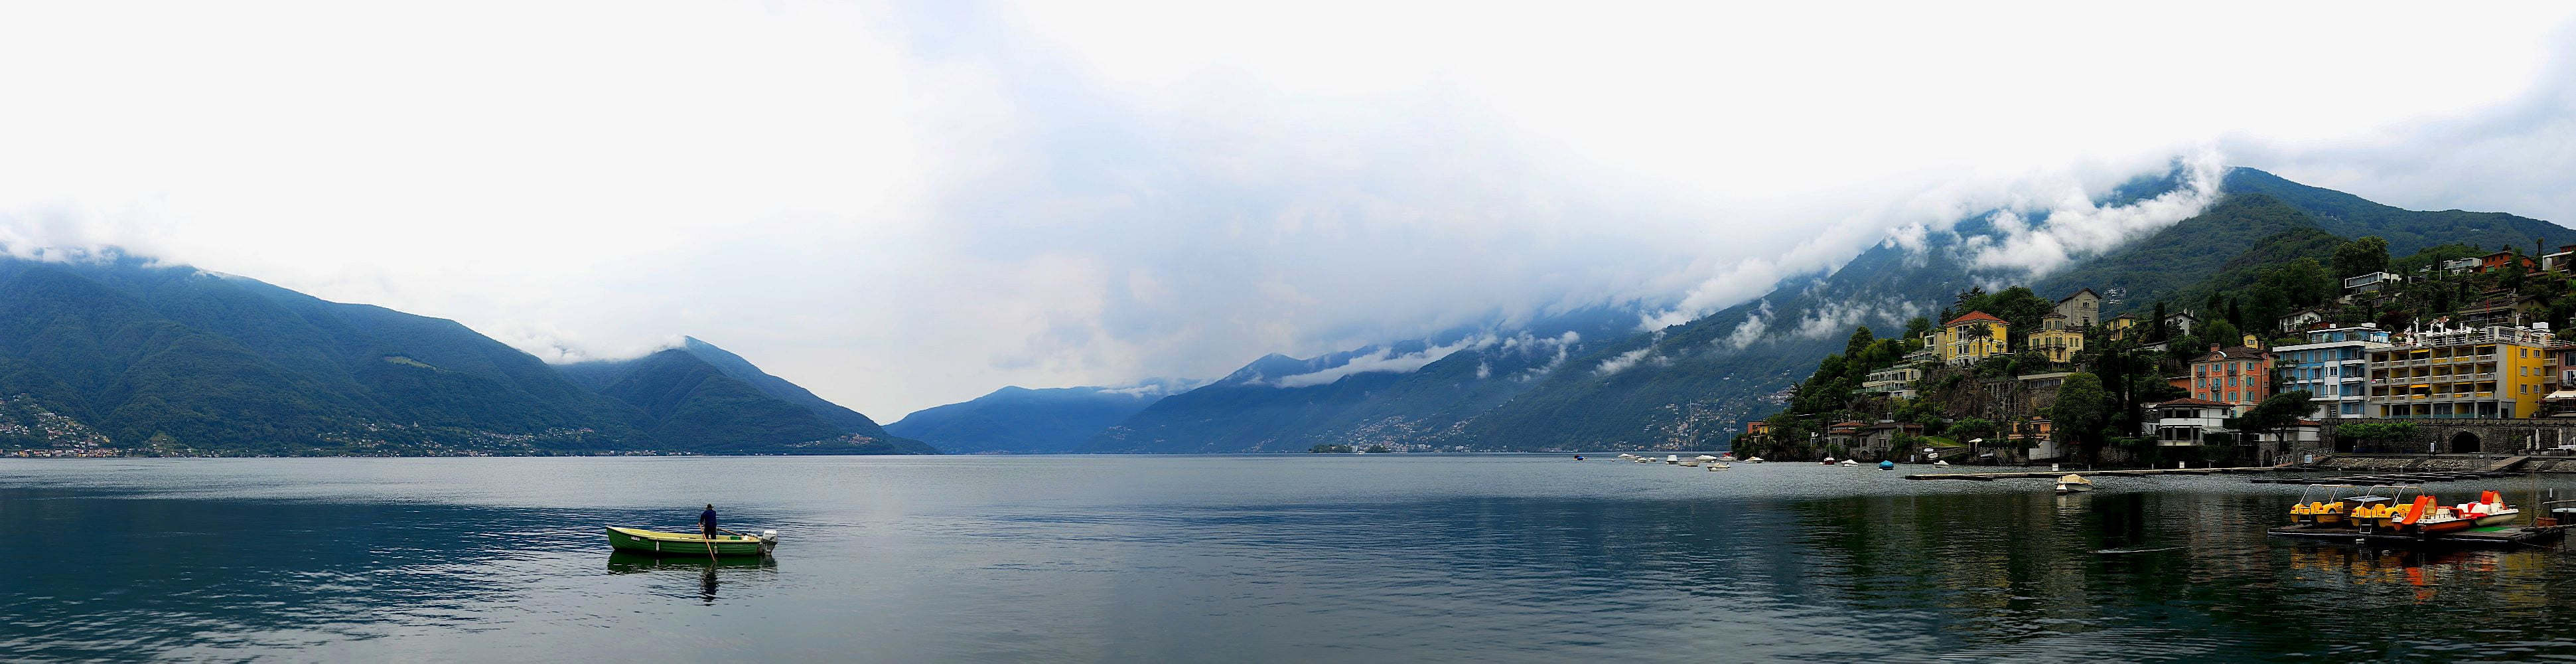 panoramic photo of person riding on boat, lago maggiore, lago maggiore